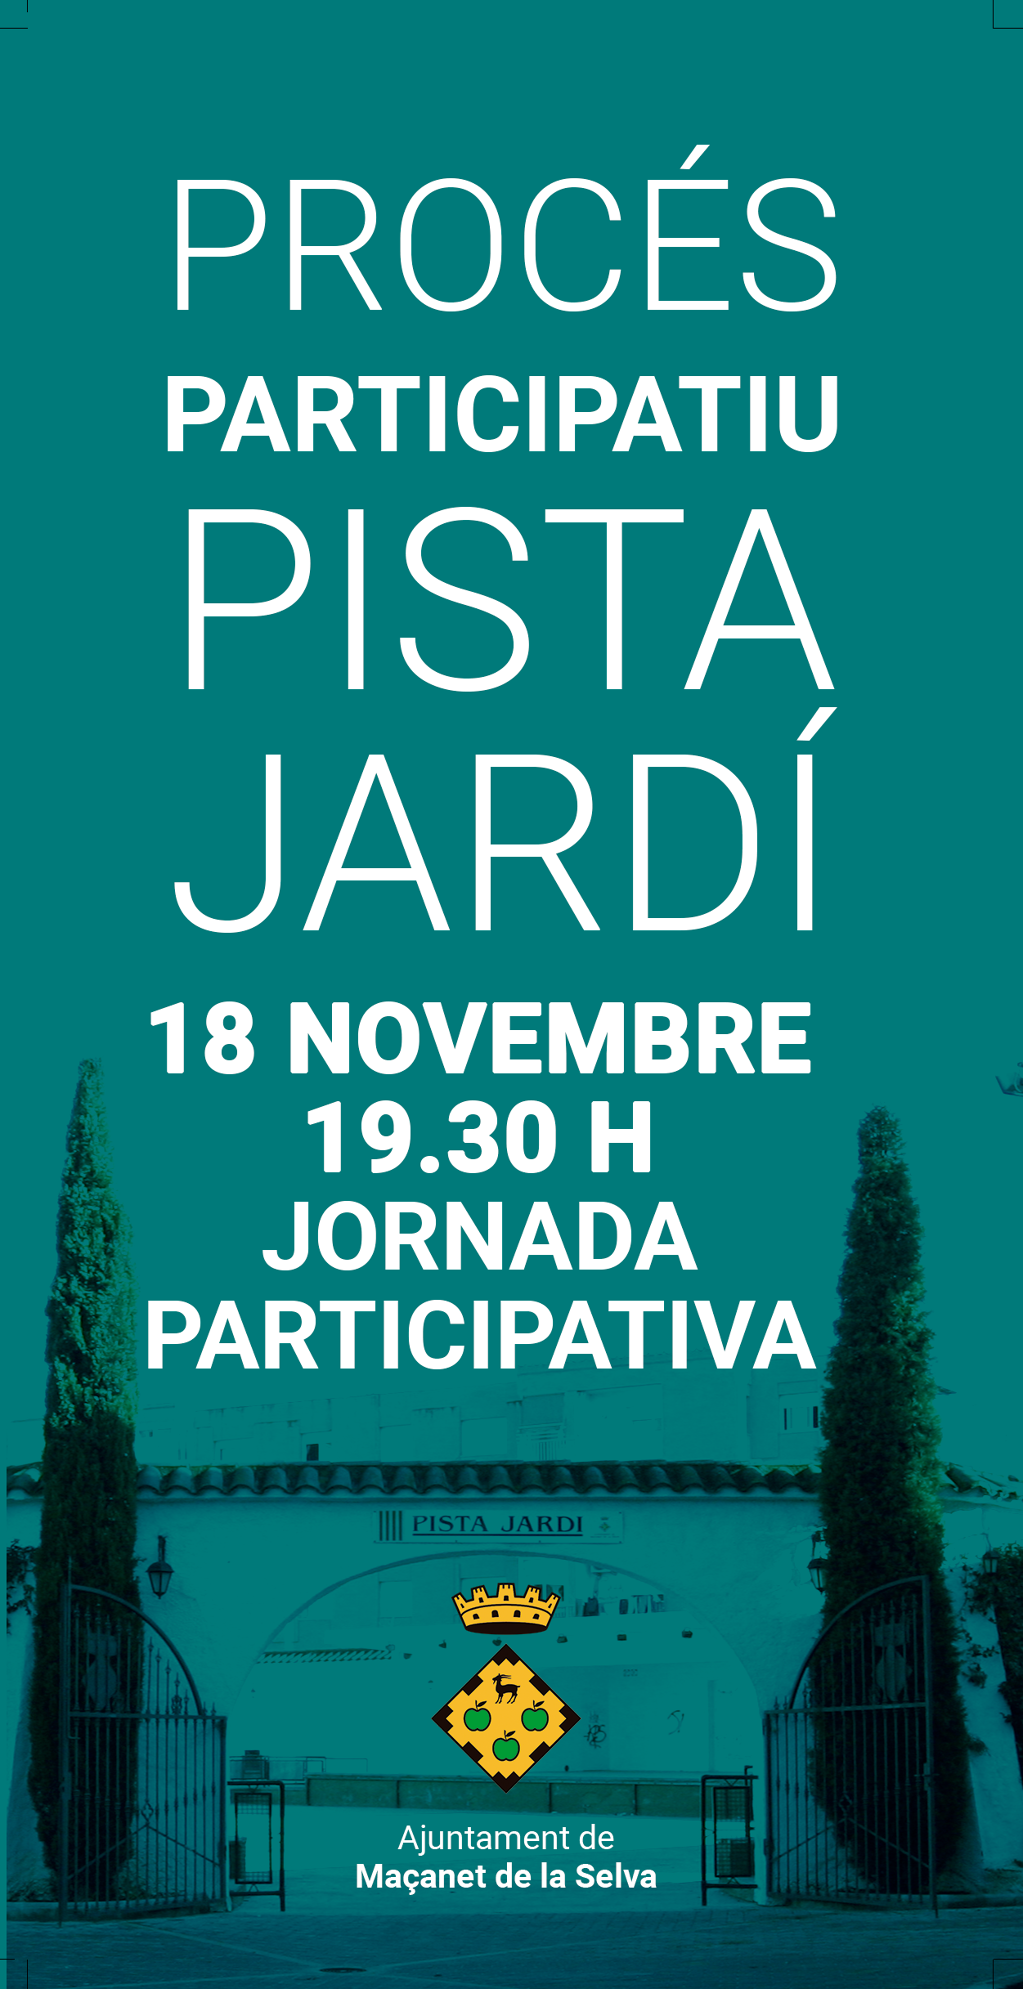 Procés participatiu Pista Jardí - e1ed7-nou-pista-jardi-1.png